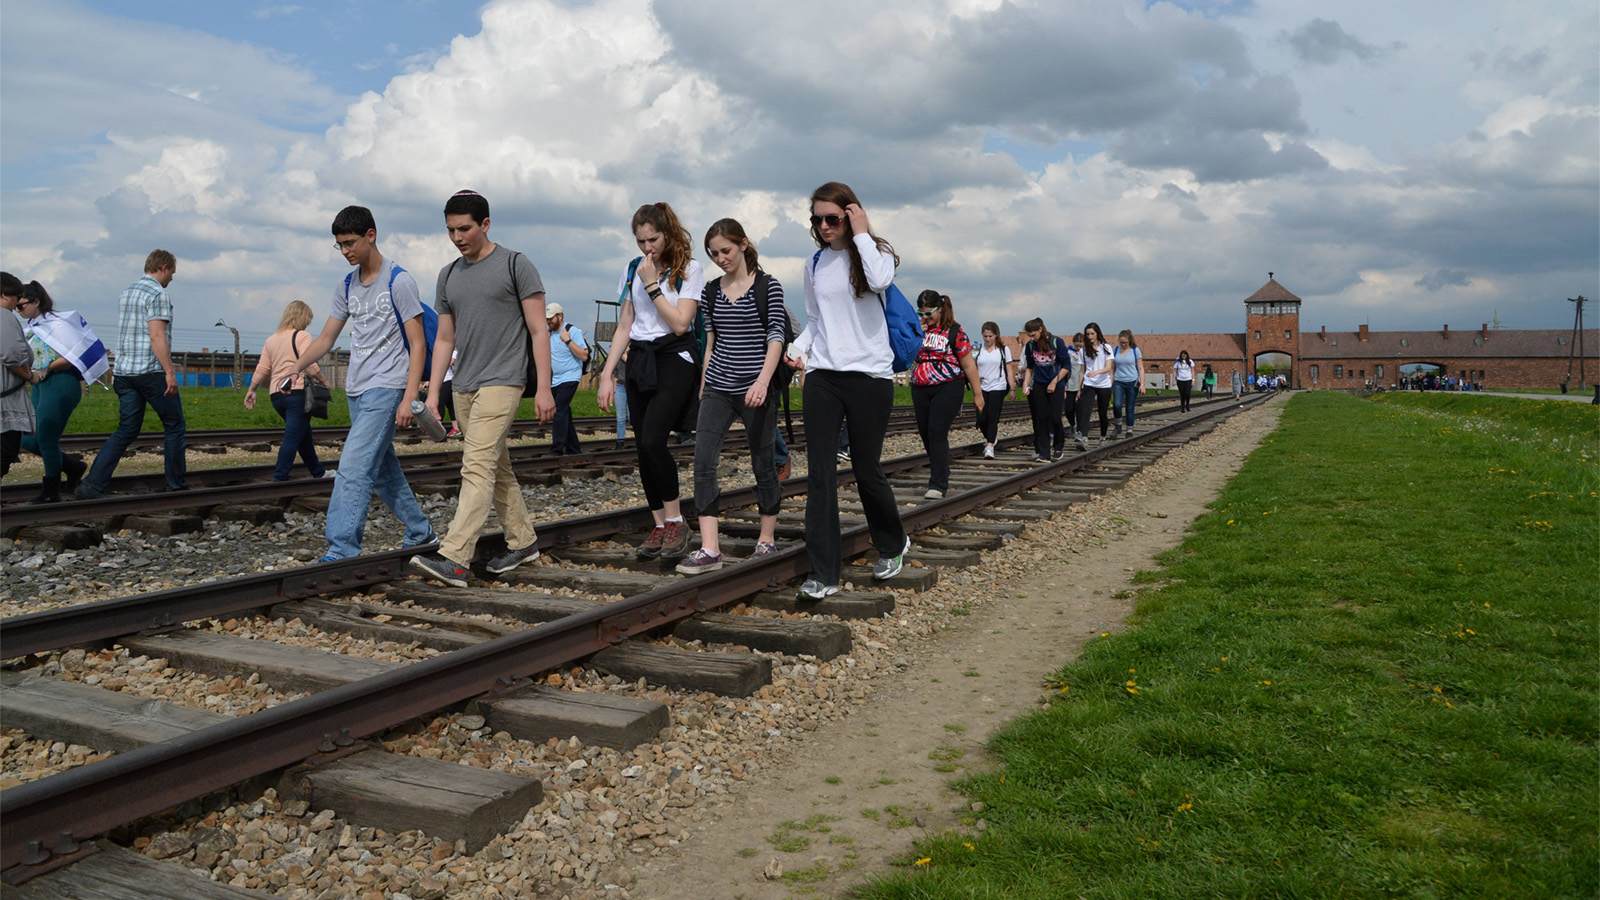 בני נוער במסע לפולין, במחנה ההשמדה אושוויץ- בירקנאו. למצולמים אין קשר לכתבה. (צילום: יוסי צליגר/ פלאש 90).